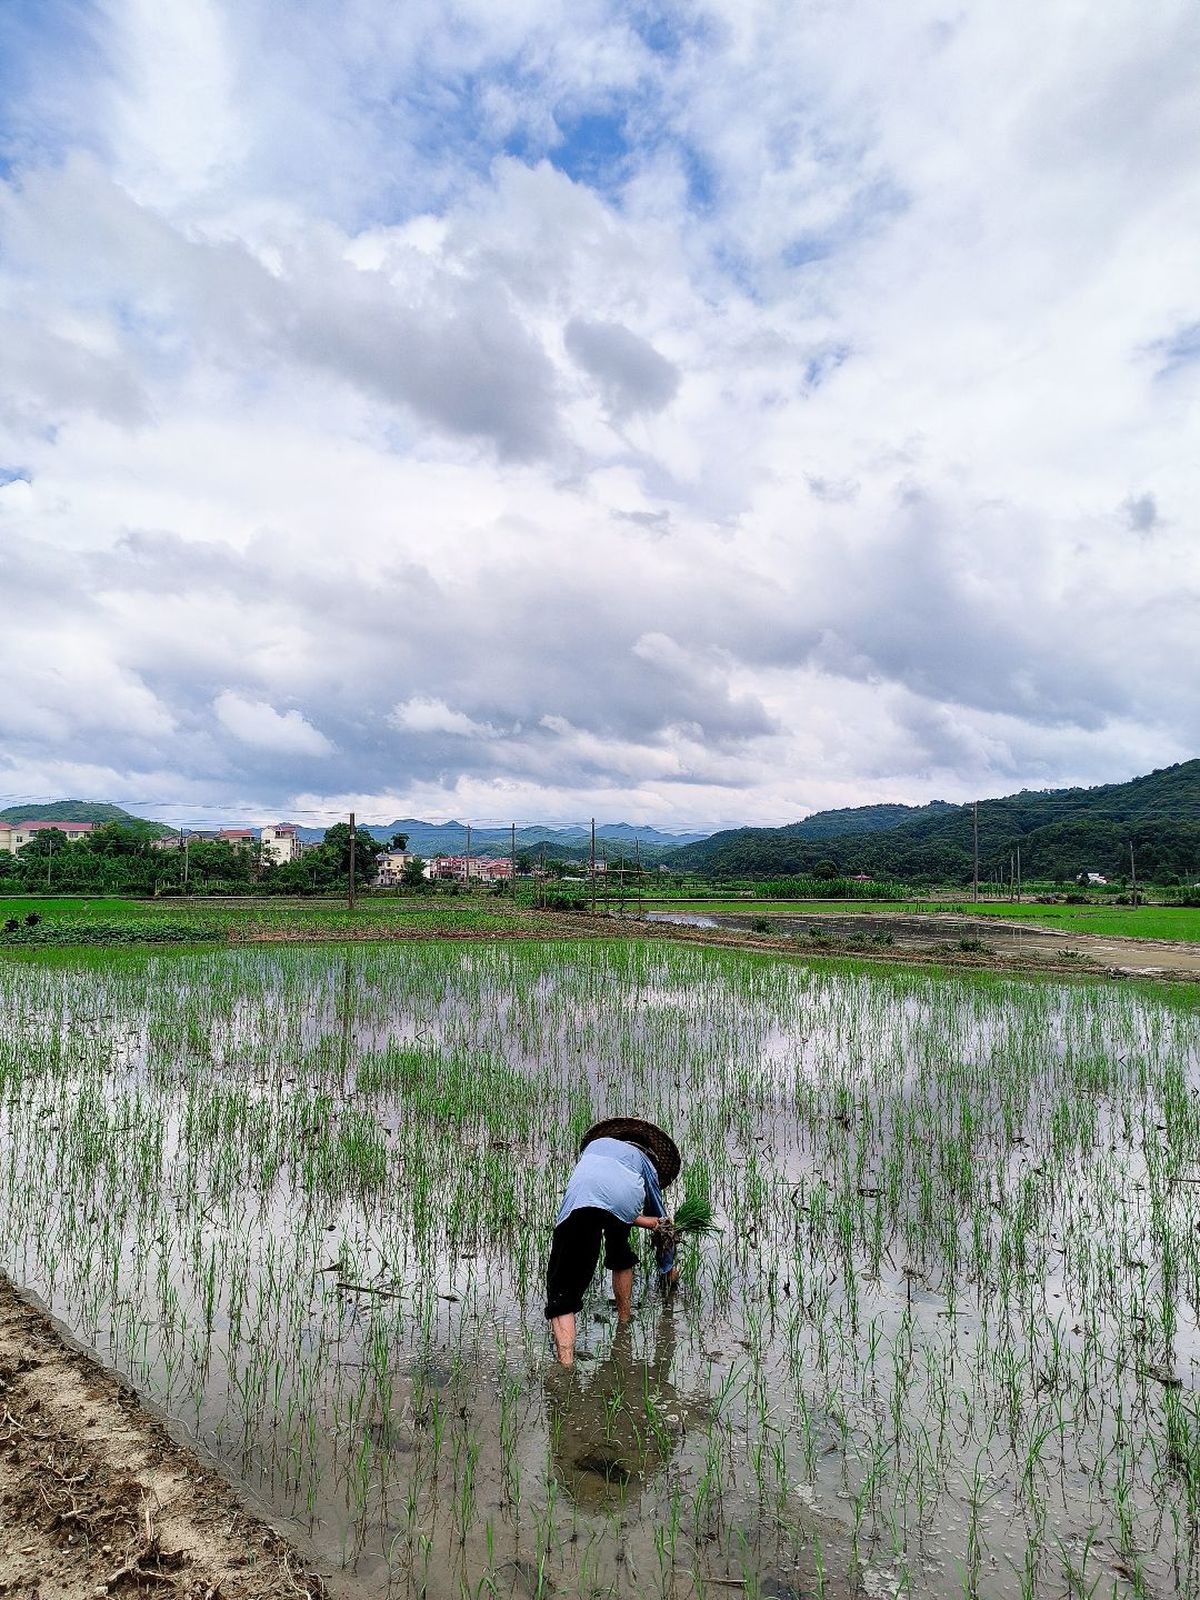 一位农民在洪水淹没的田地里种水稻 而另一个人在水边工作。